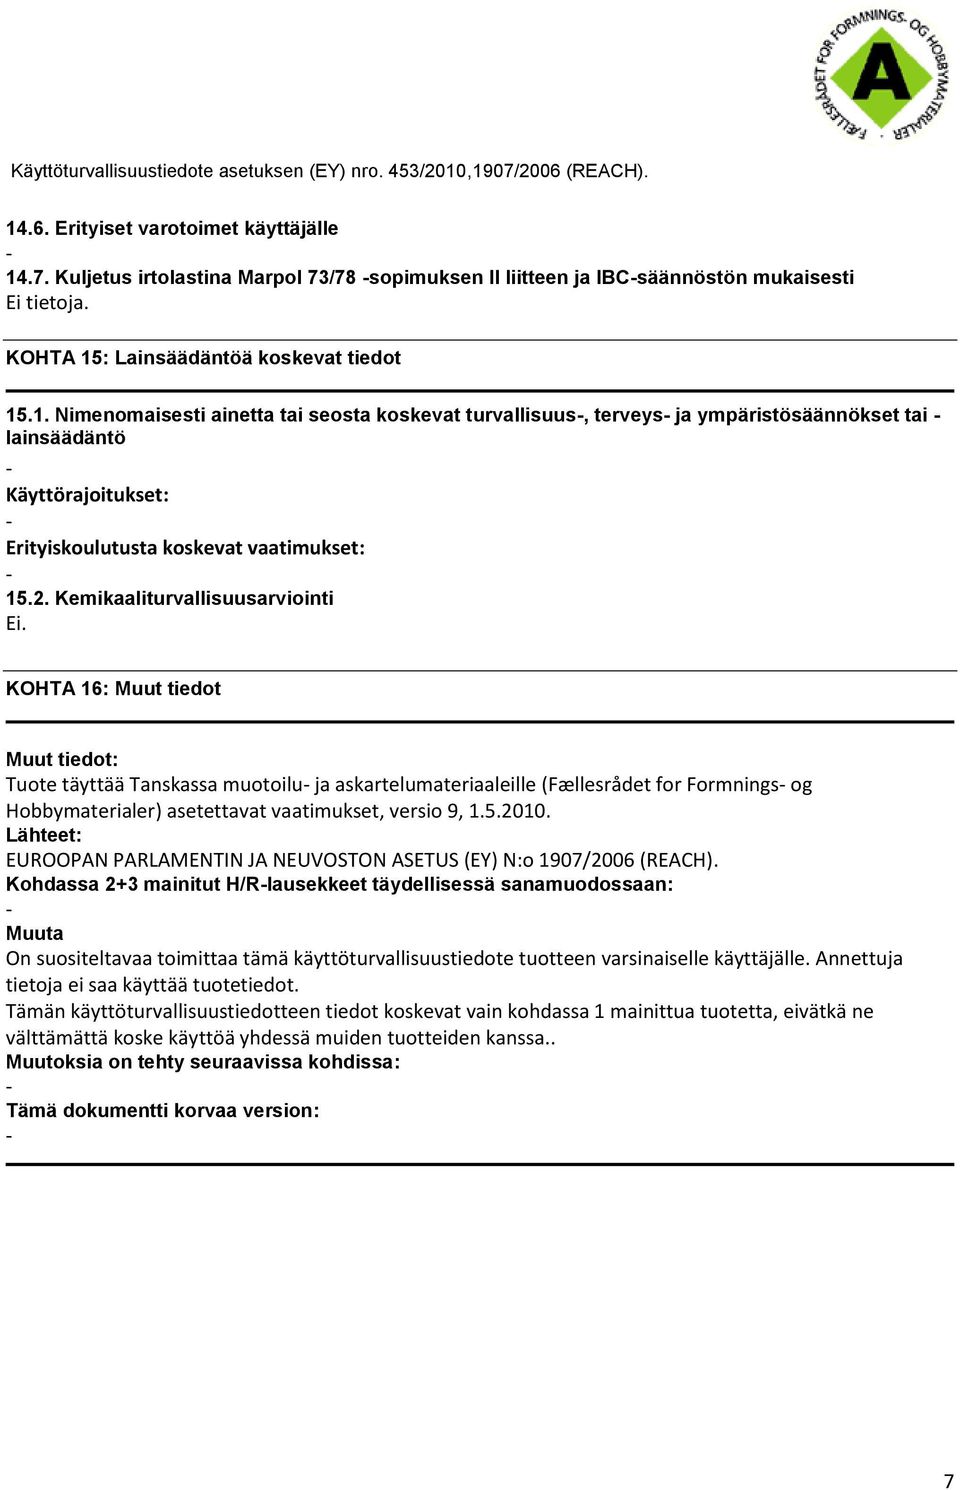 KOHTA 16: Muut tiedot Muut tiedot: Tuote täyttää Tanskassa muotoilu ja askartelumateriaaleille (Fællesrådet for Formnings og Hobbymaterialer) asetettavat vaatimukset, versio 9, 1.5.2010.